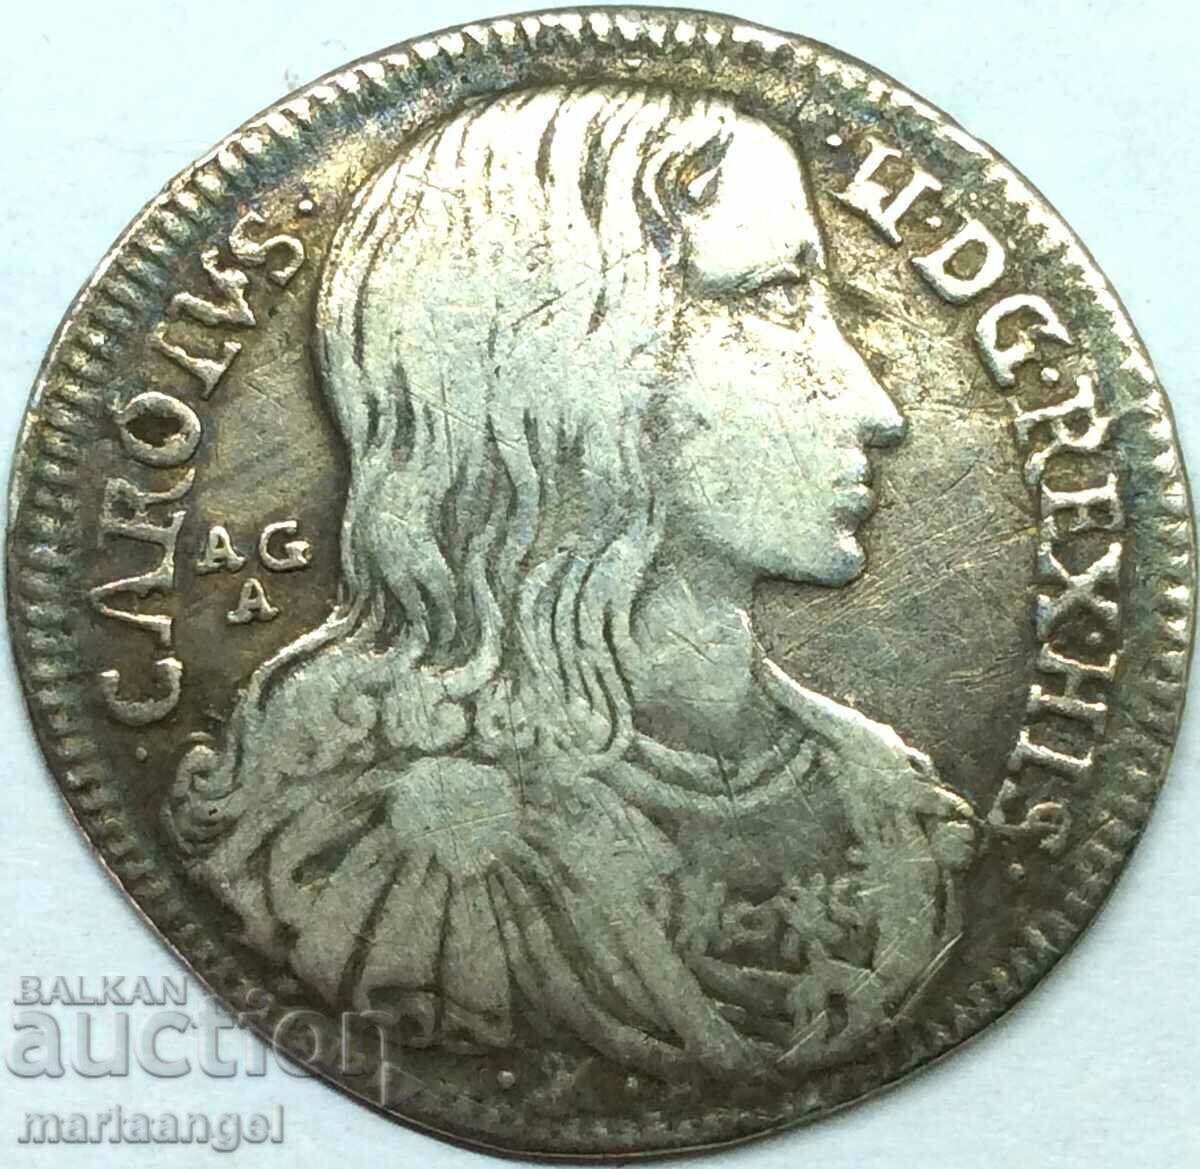 Napoli 20 de boabe Carol al II-lea Spaniol Italia argint - rare